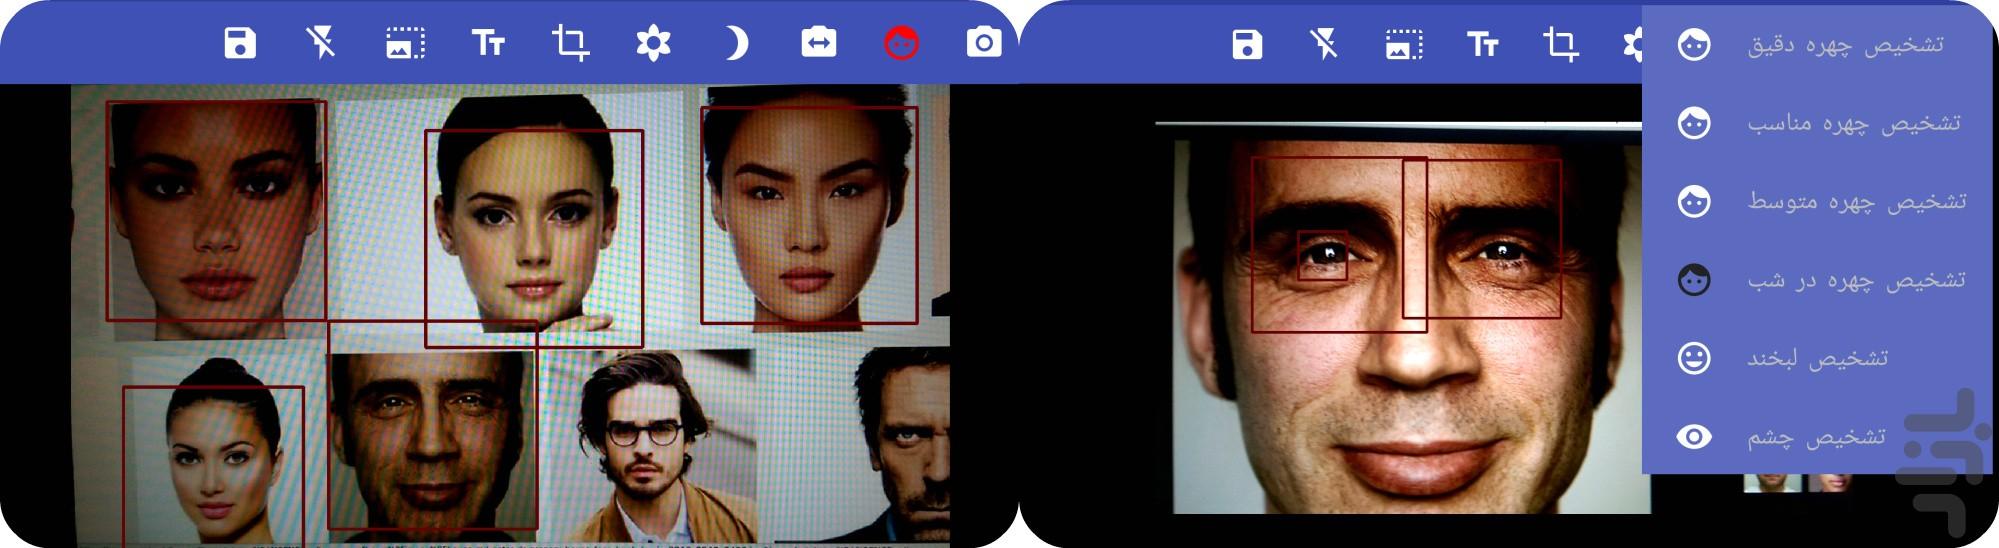 Genius Camera + effect - Image screenshot of android app